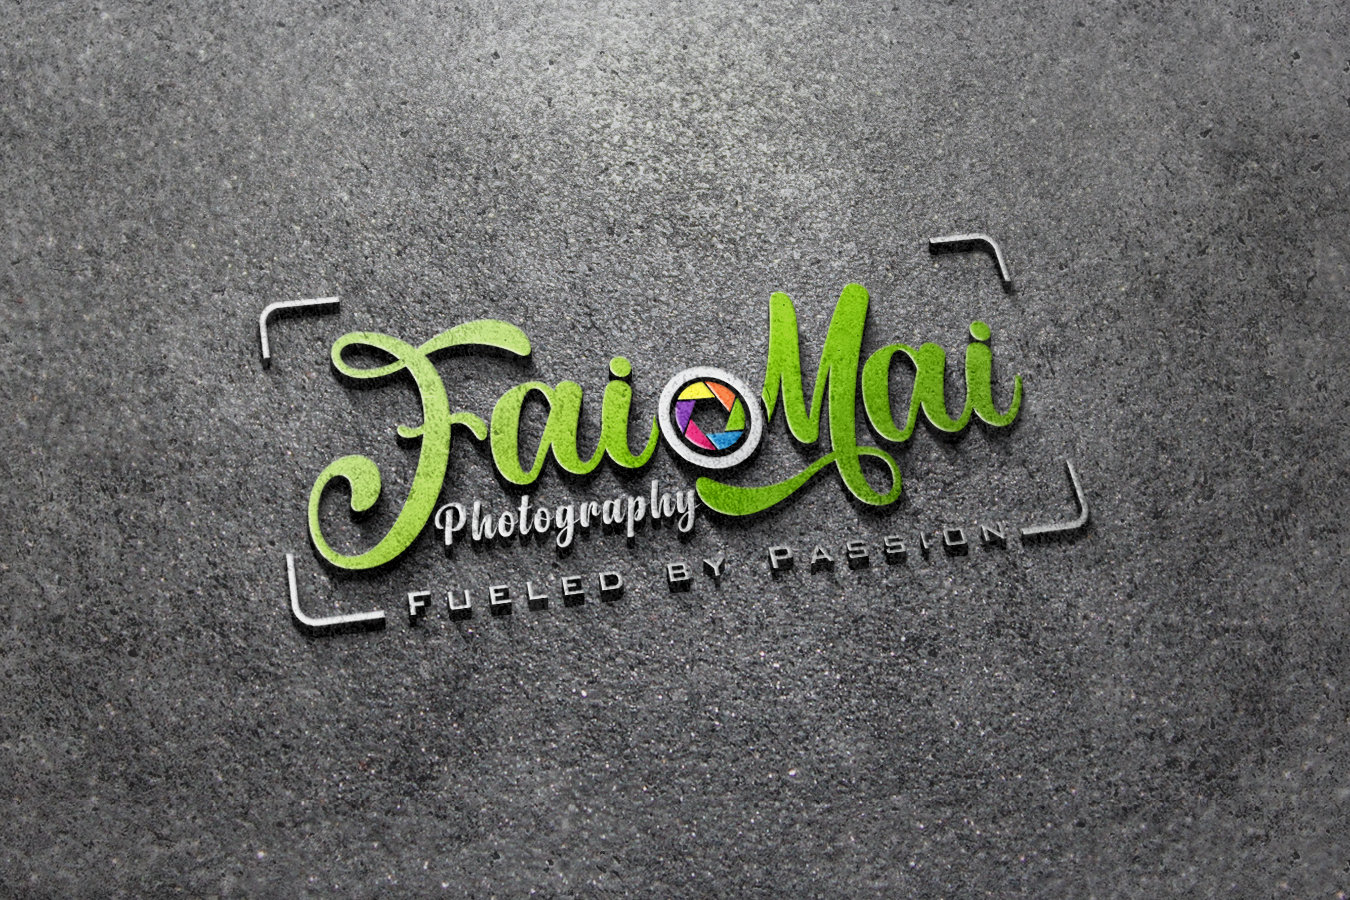 3D image of Fai Mai Company logo